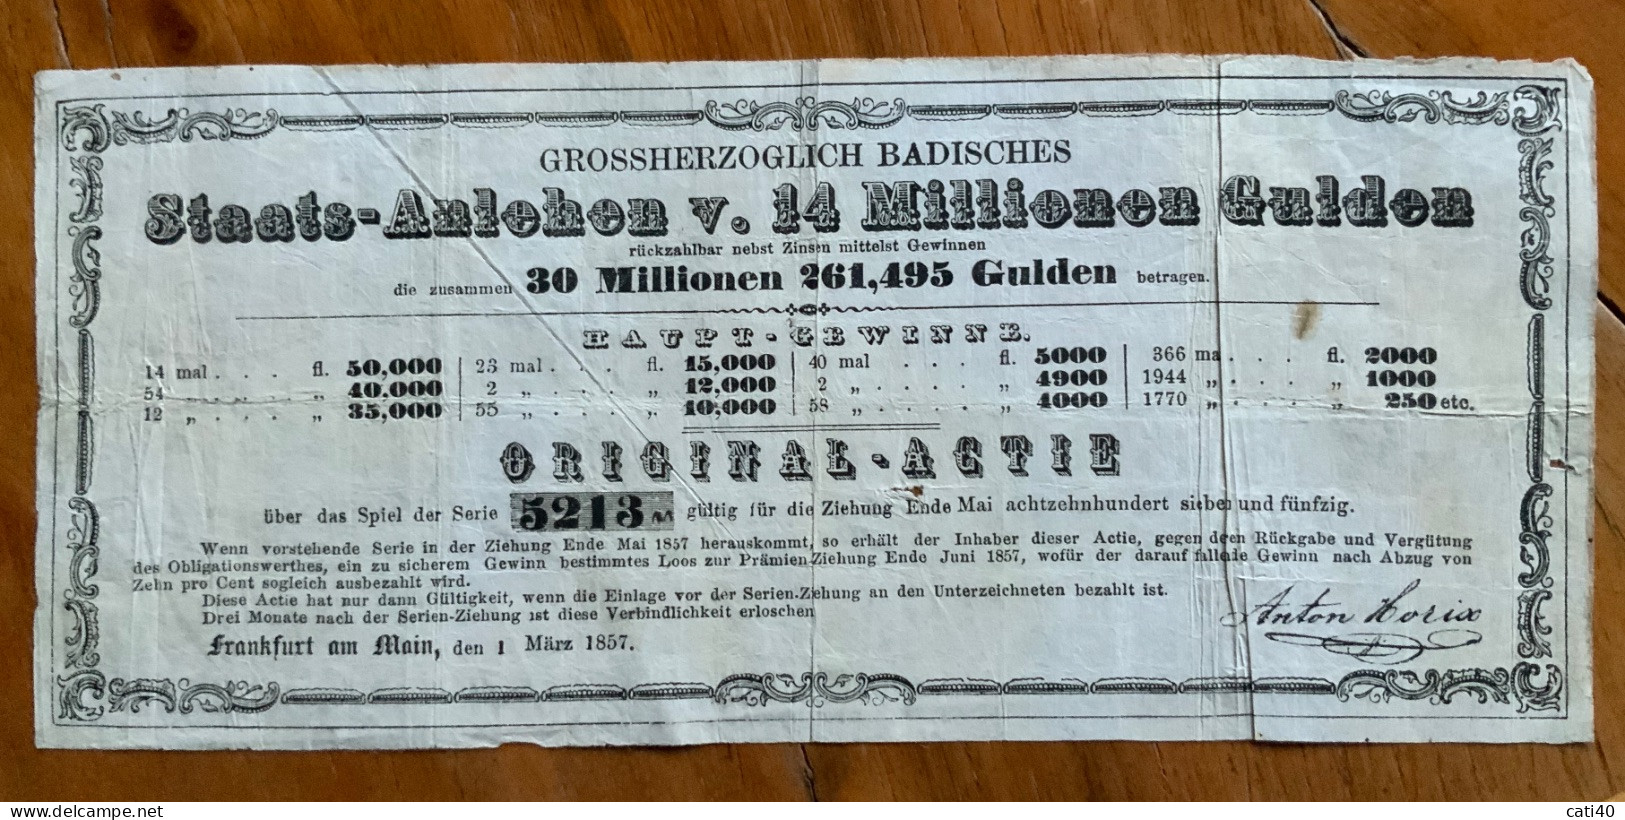 FRANKFURT AM MAIN 1 MARZ 1857 - GROSSHERZOGLICH BADISCHES -  STAATS - ANLEHEN ORIGINAL - ACTIE - 14 MILIONEN GULDEN - Trasporti